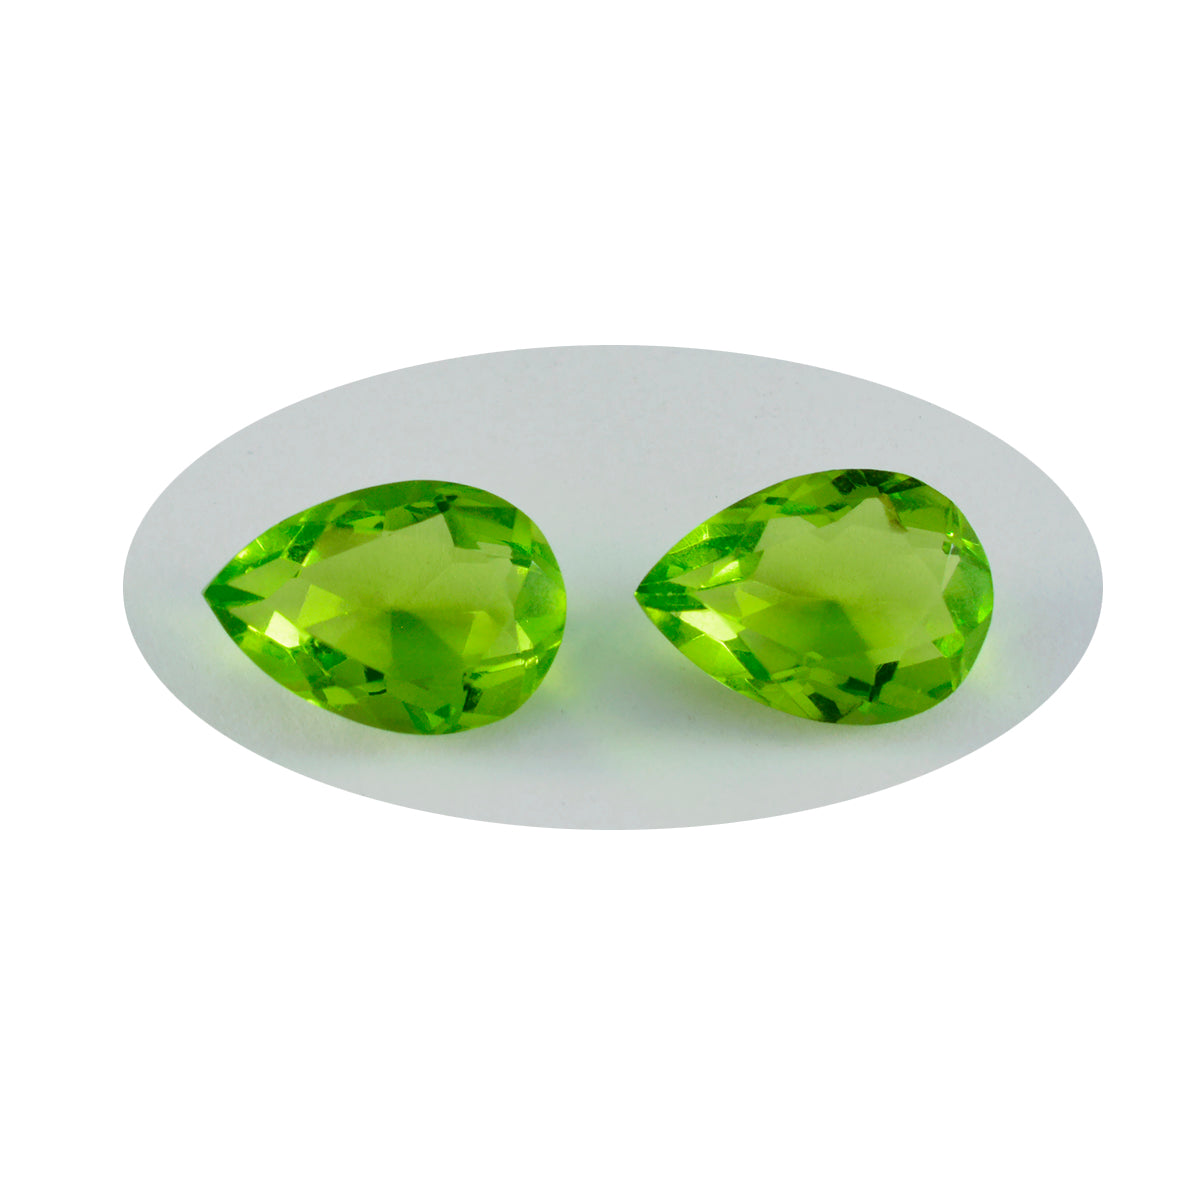 riyogems 1 pieza de peridoto verde cz facetado 10x14 mm forma de pera piedra preciosa de calidad increíble